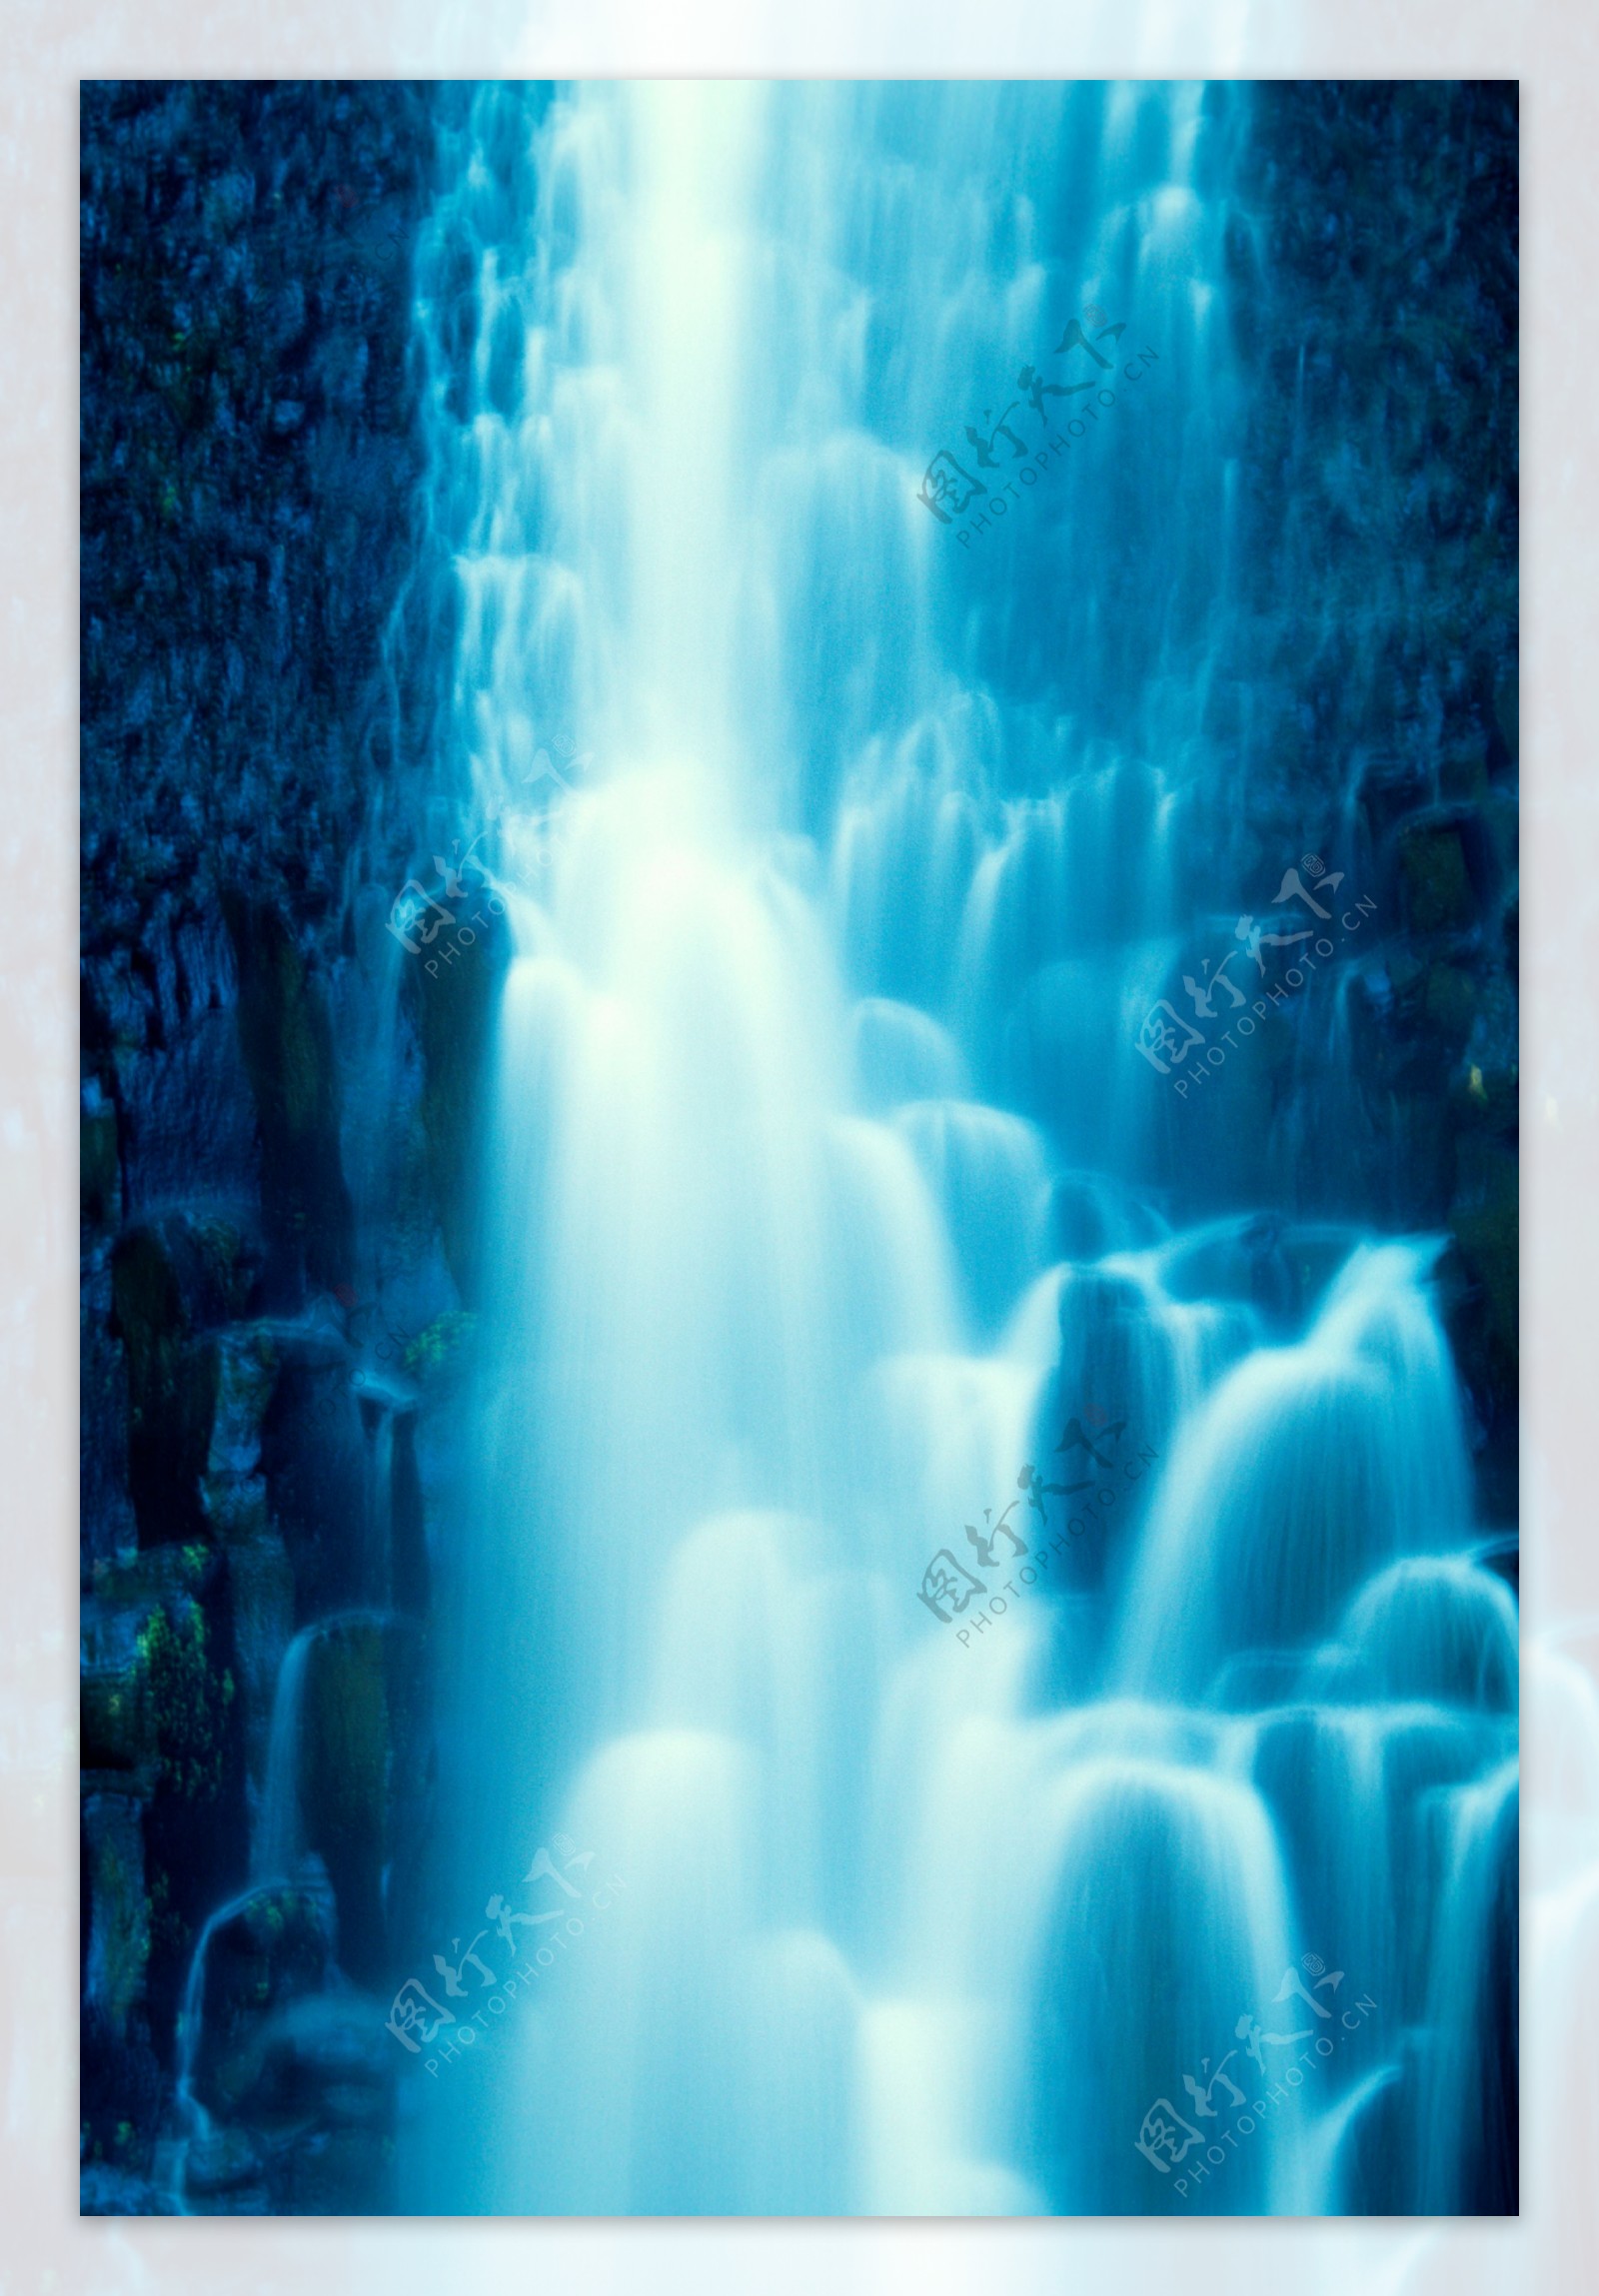 高山流水瀑布风景画图片